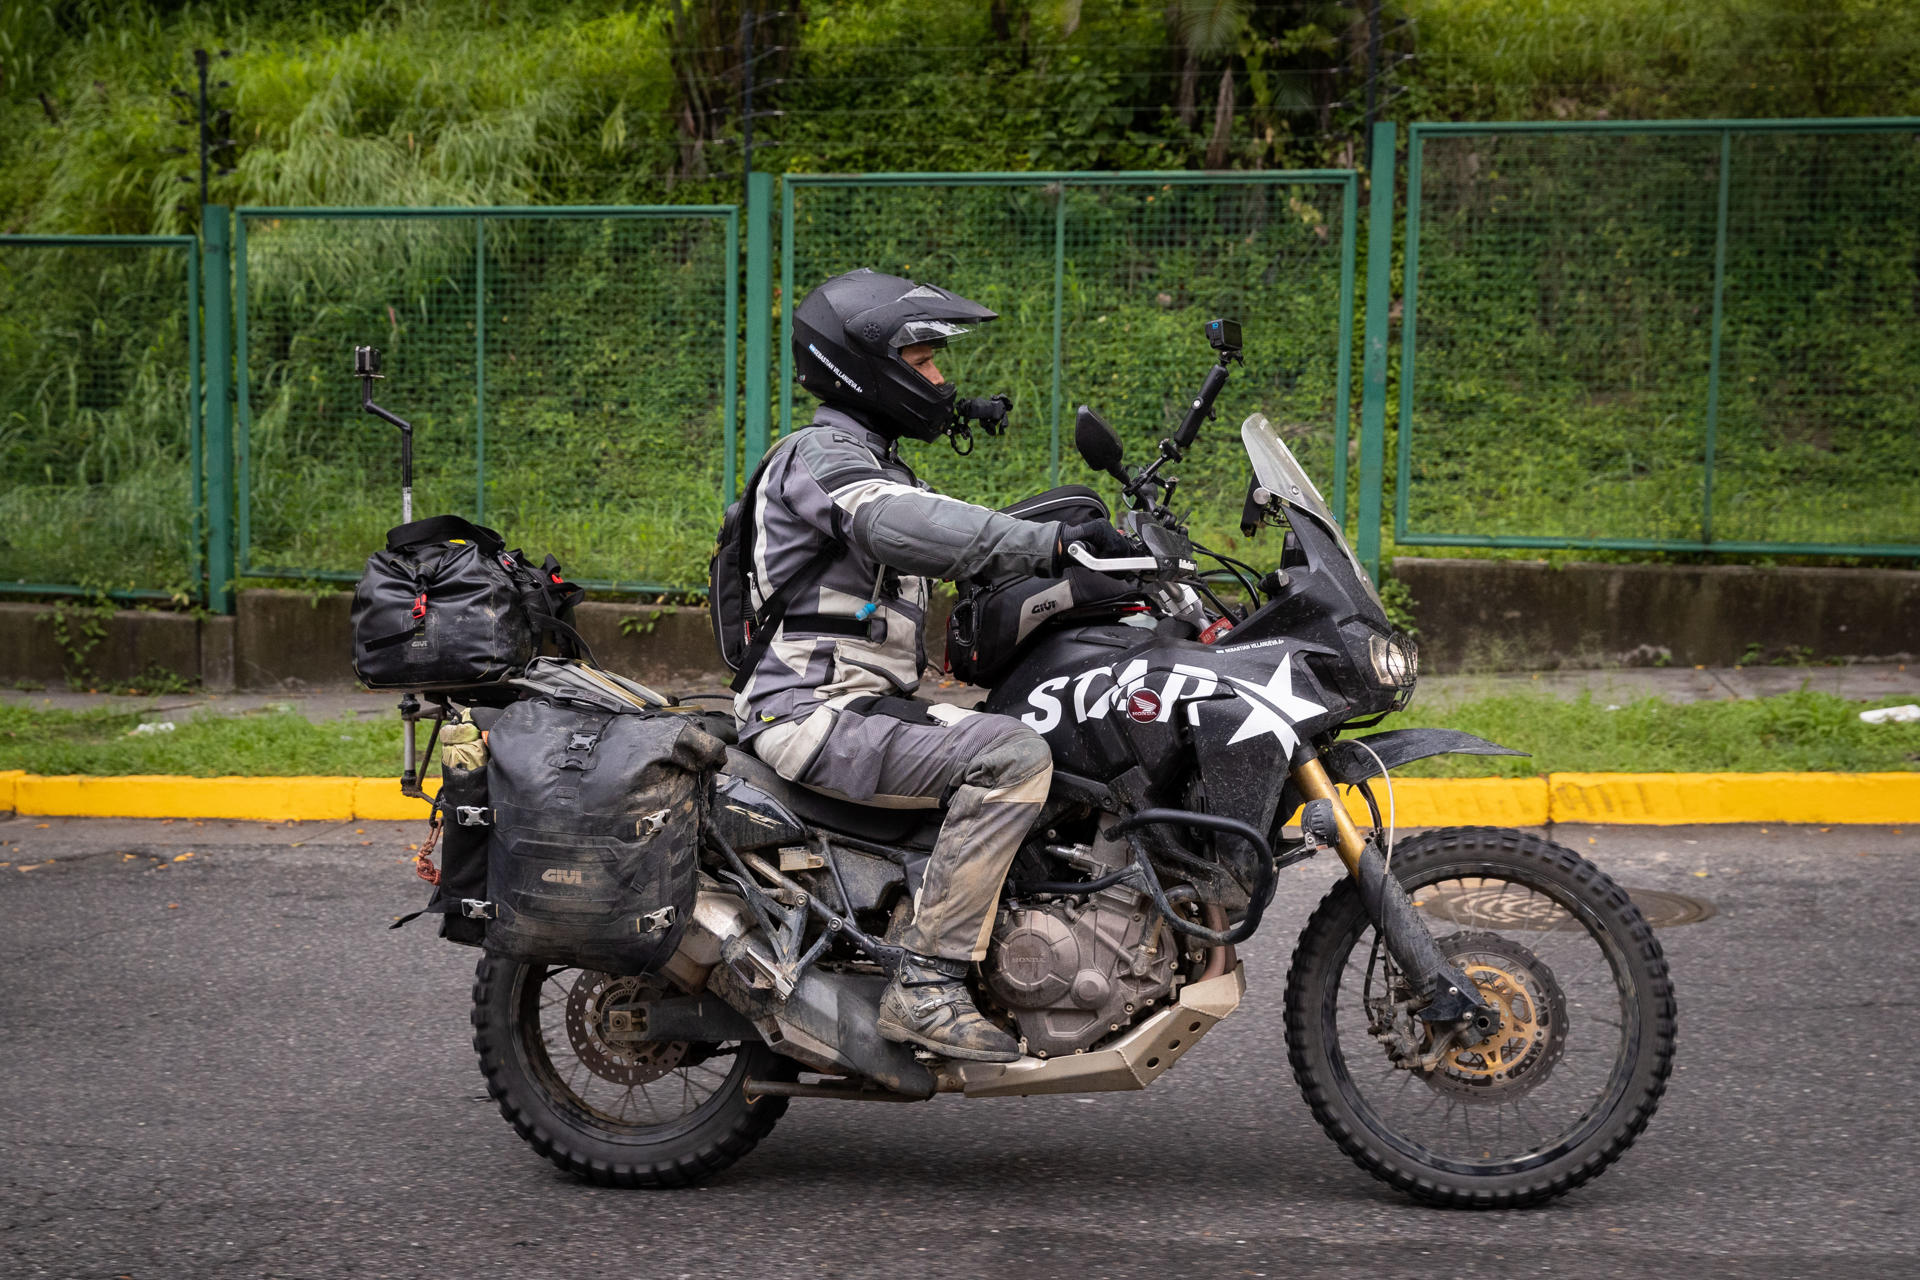 Turistas aventureros que visitan Venezuela: “Fue una experiencia alucinante, pero muy costosa”